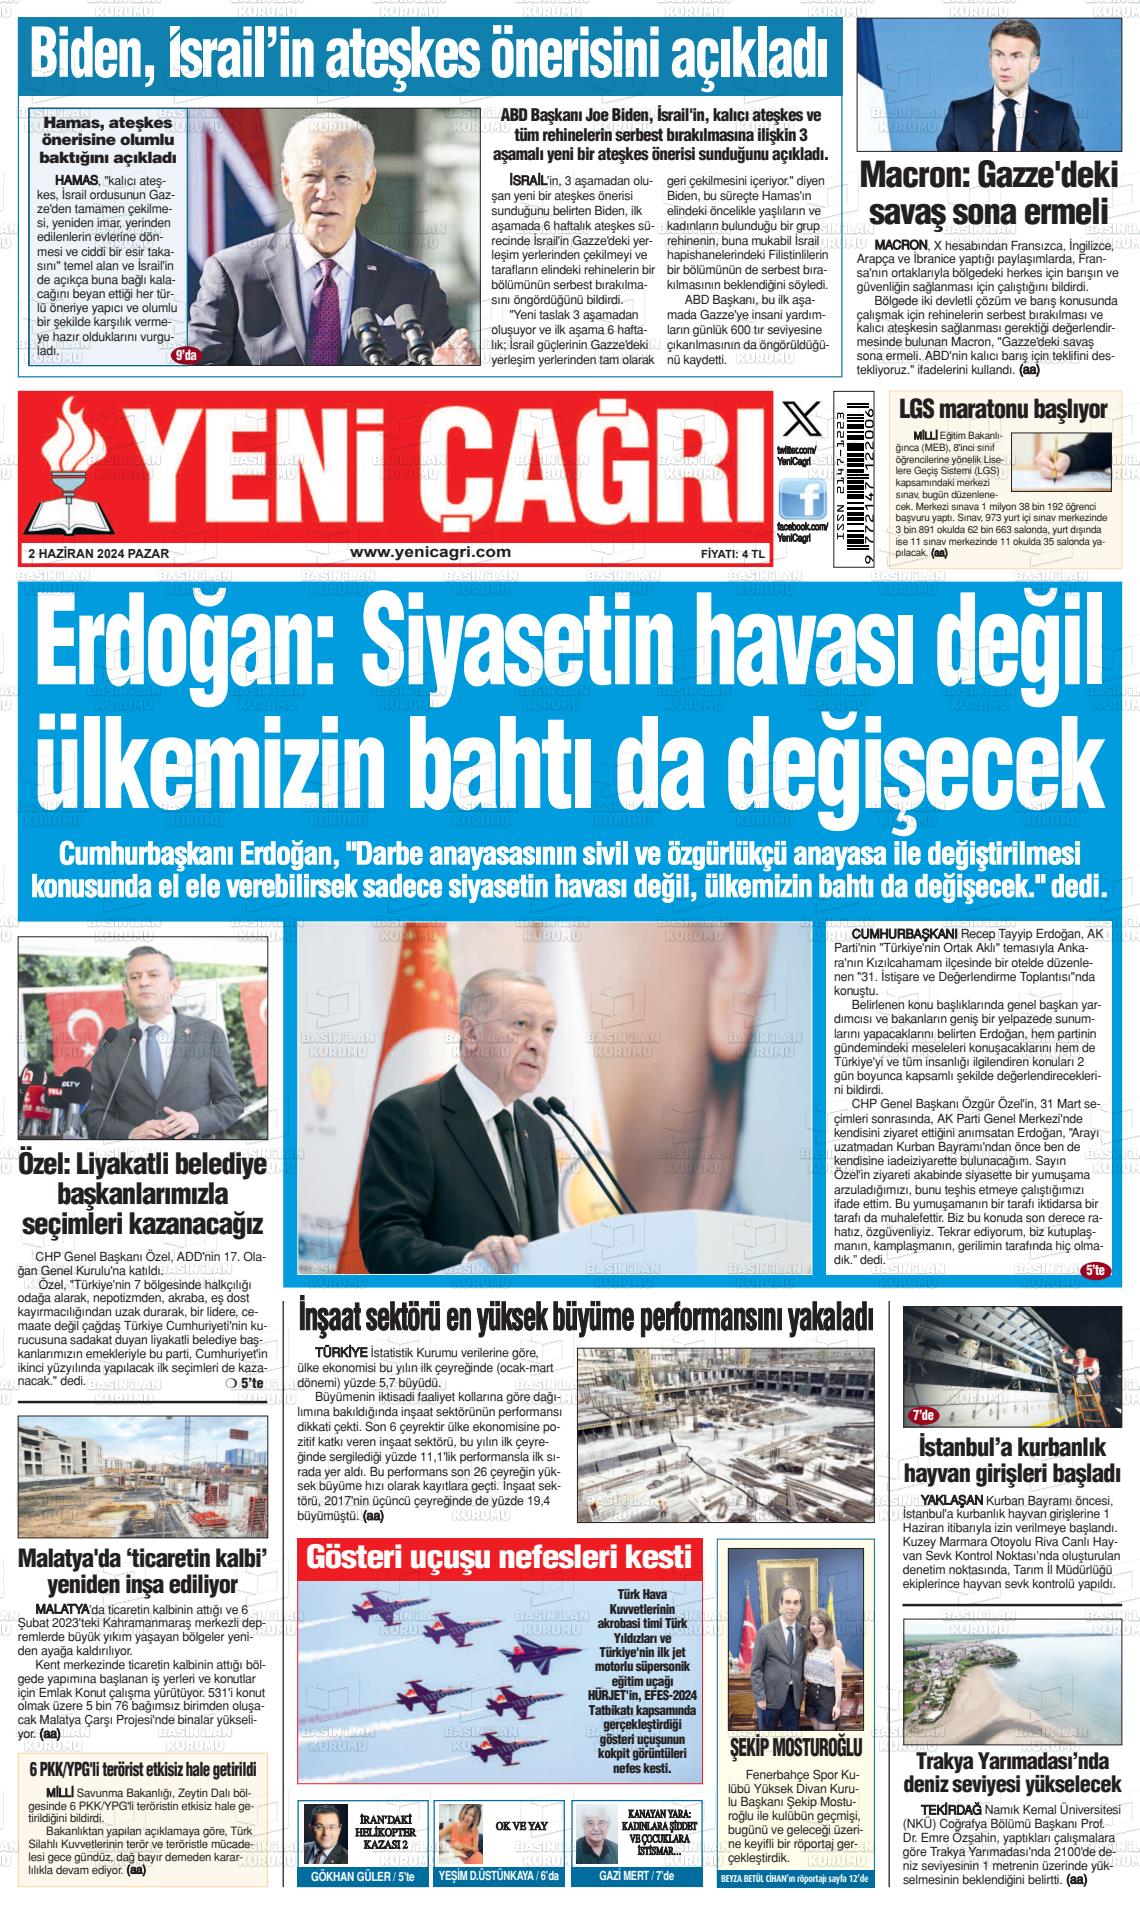 YENİ ÇAĞRI Gazetesi